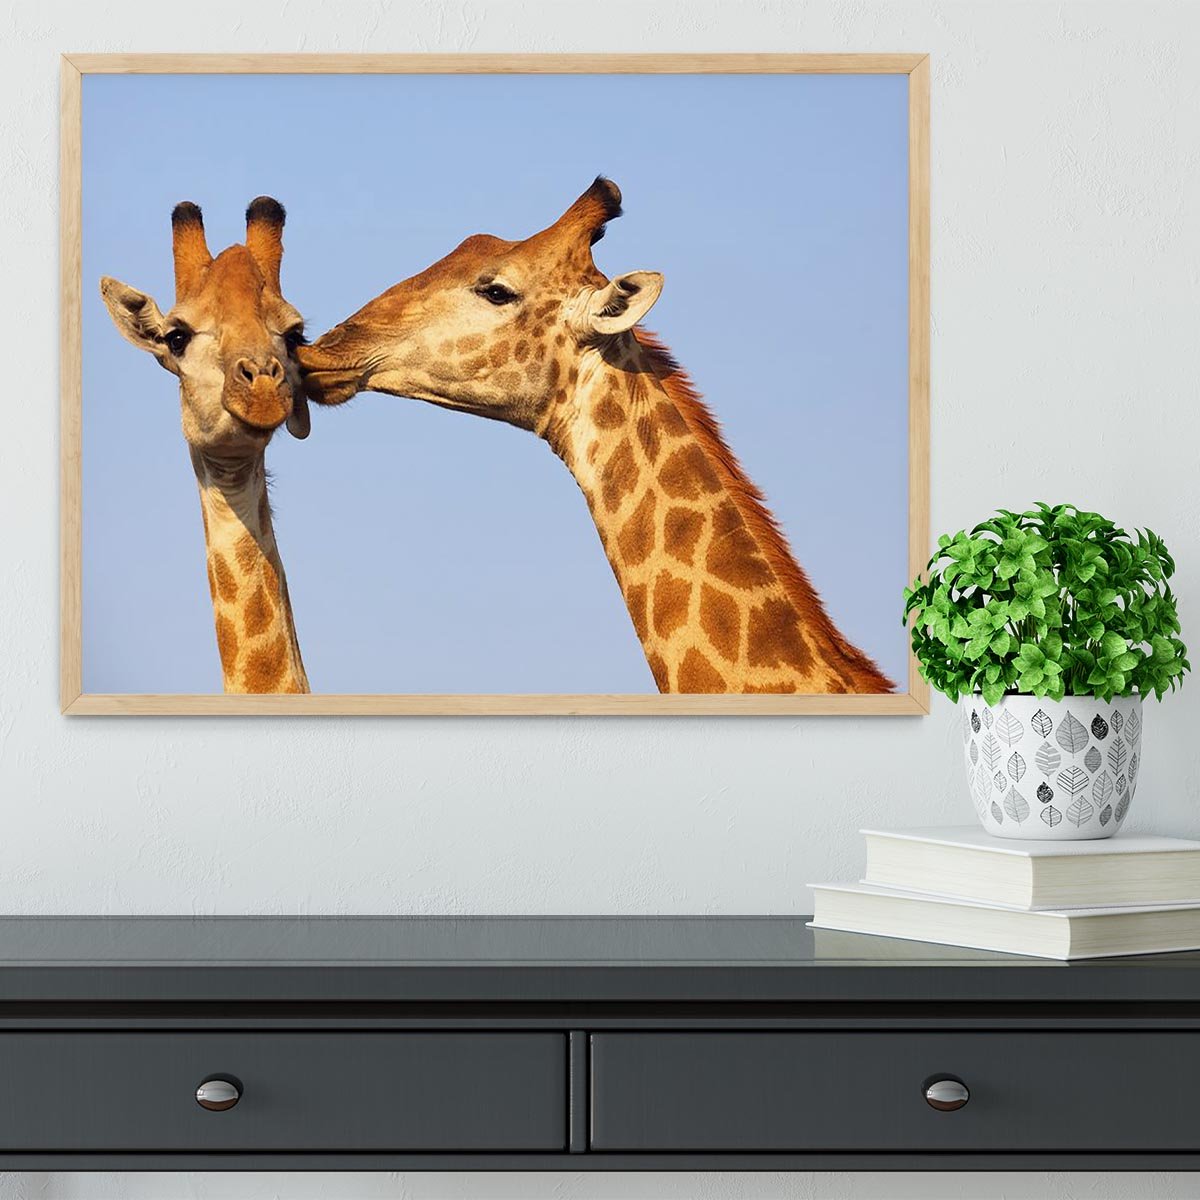 Giraffe pair bonding Framed Print - Canvas Art Rocks - 4